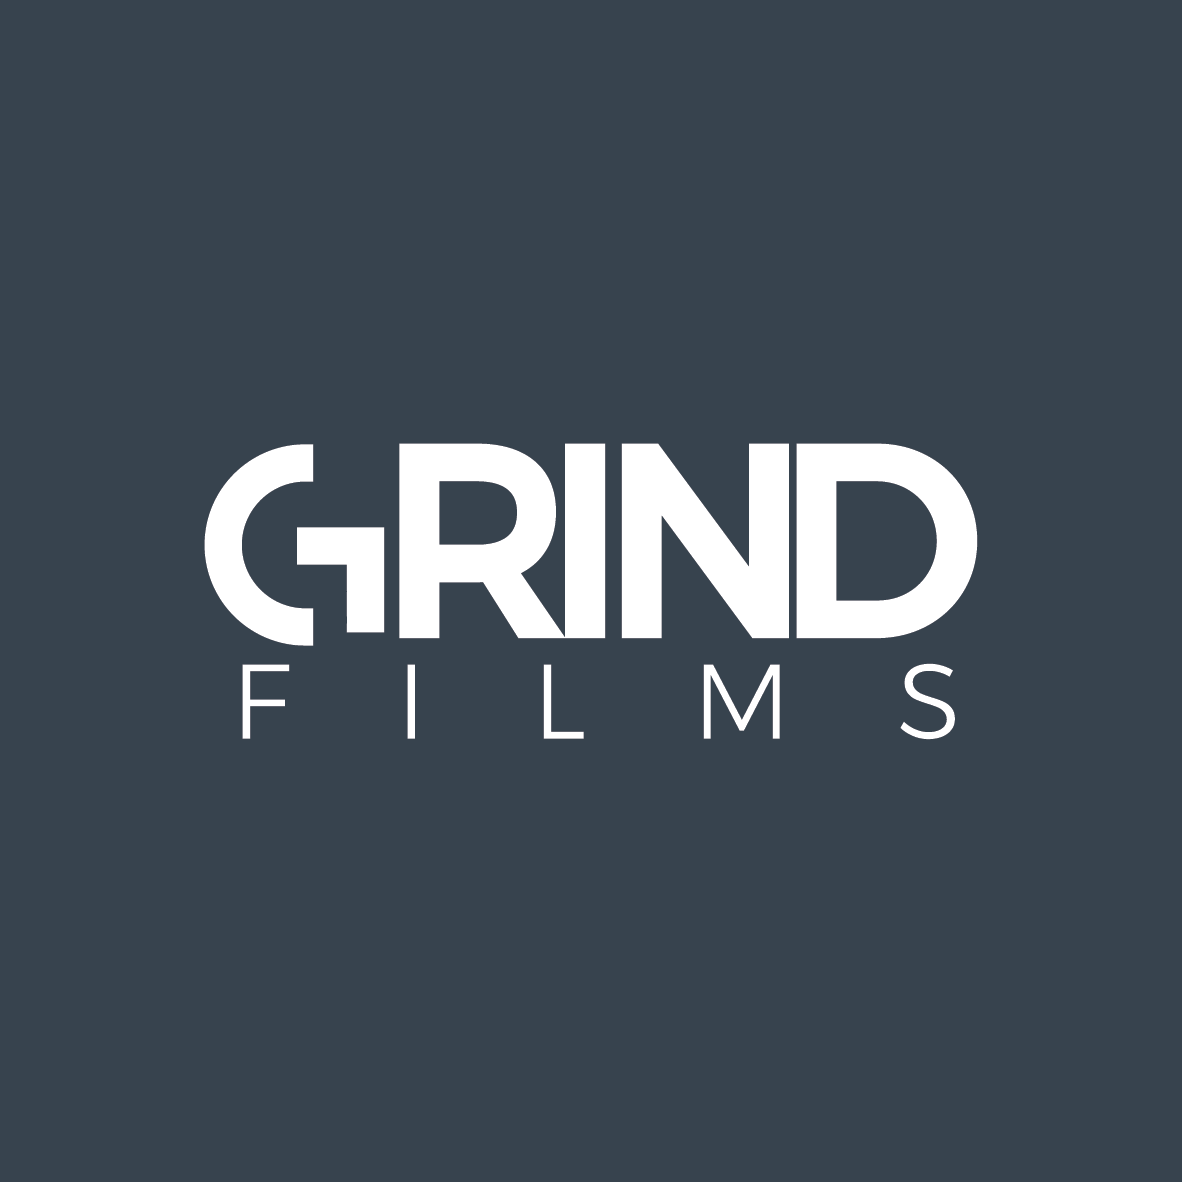 GRIND FILMS